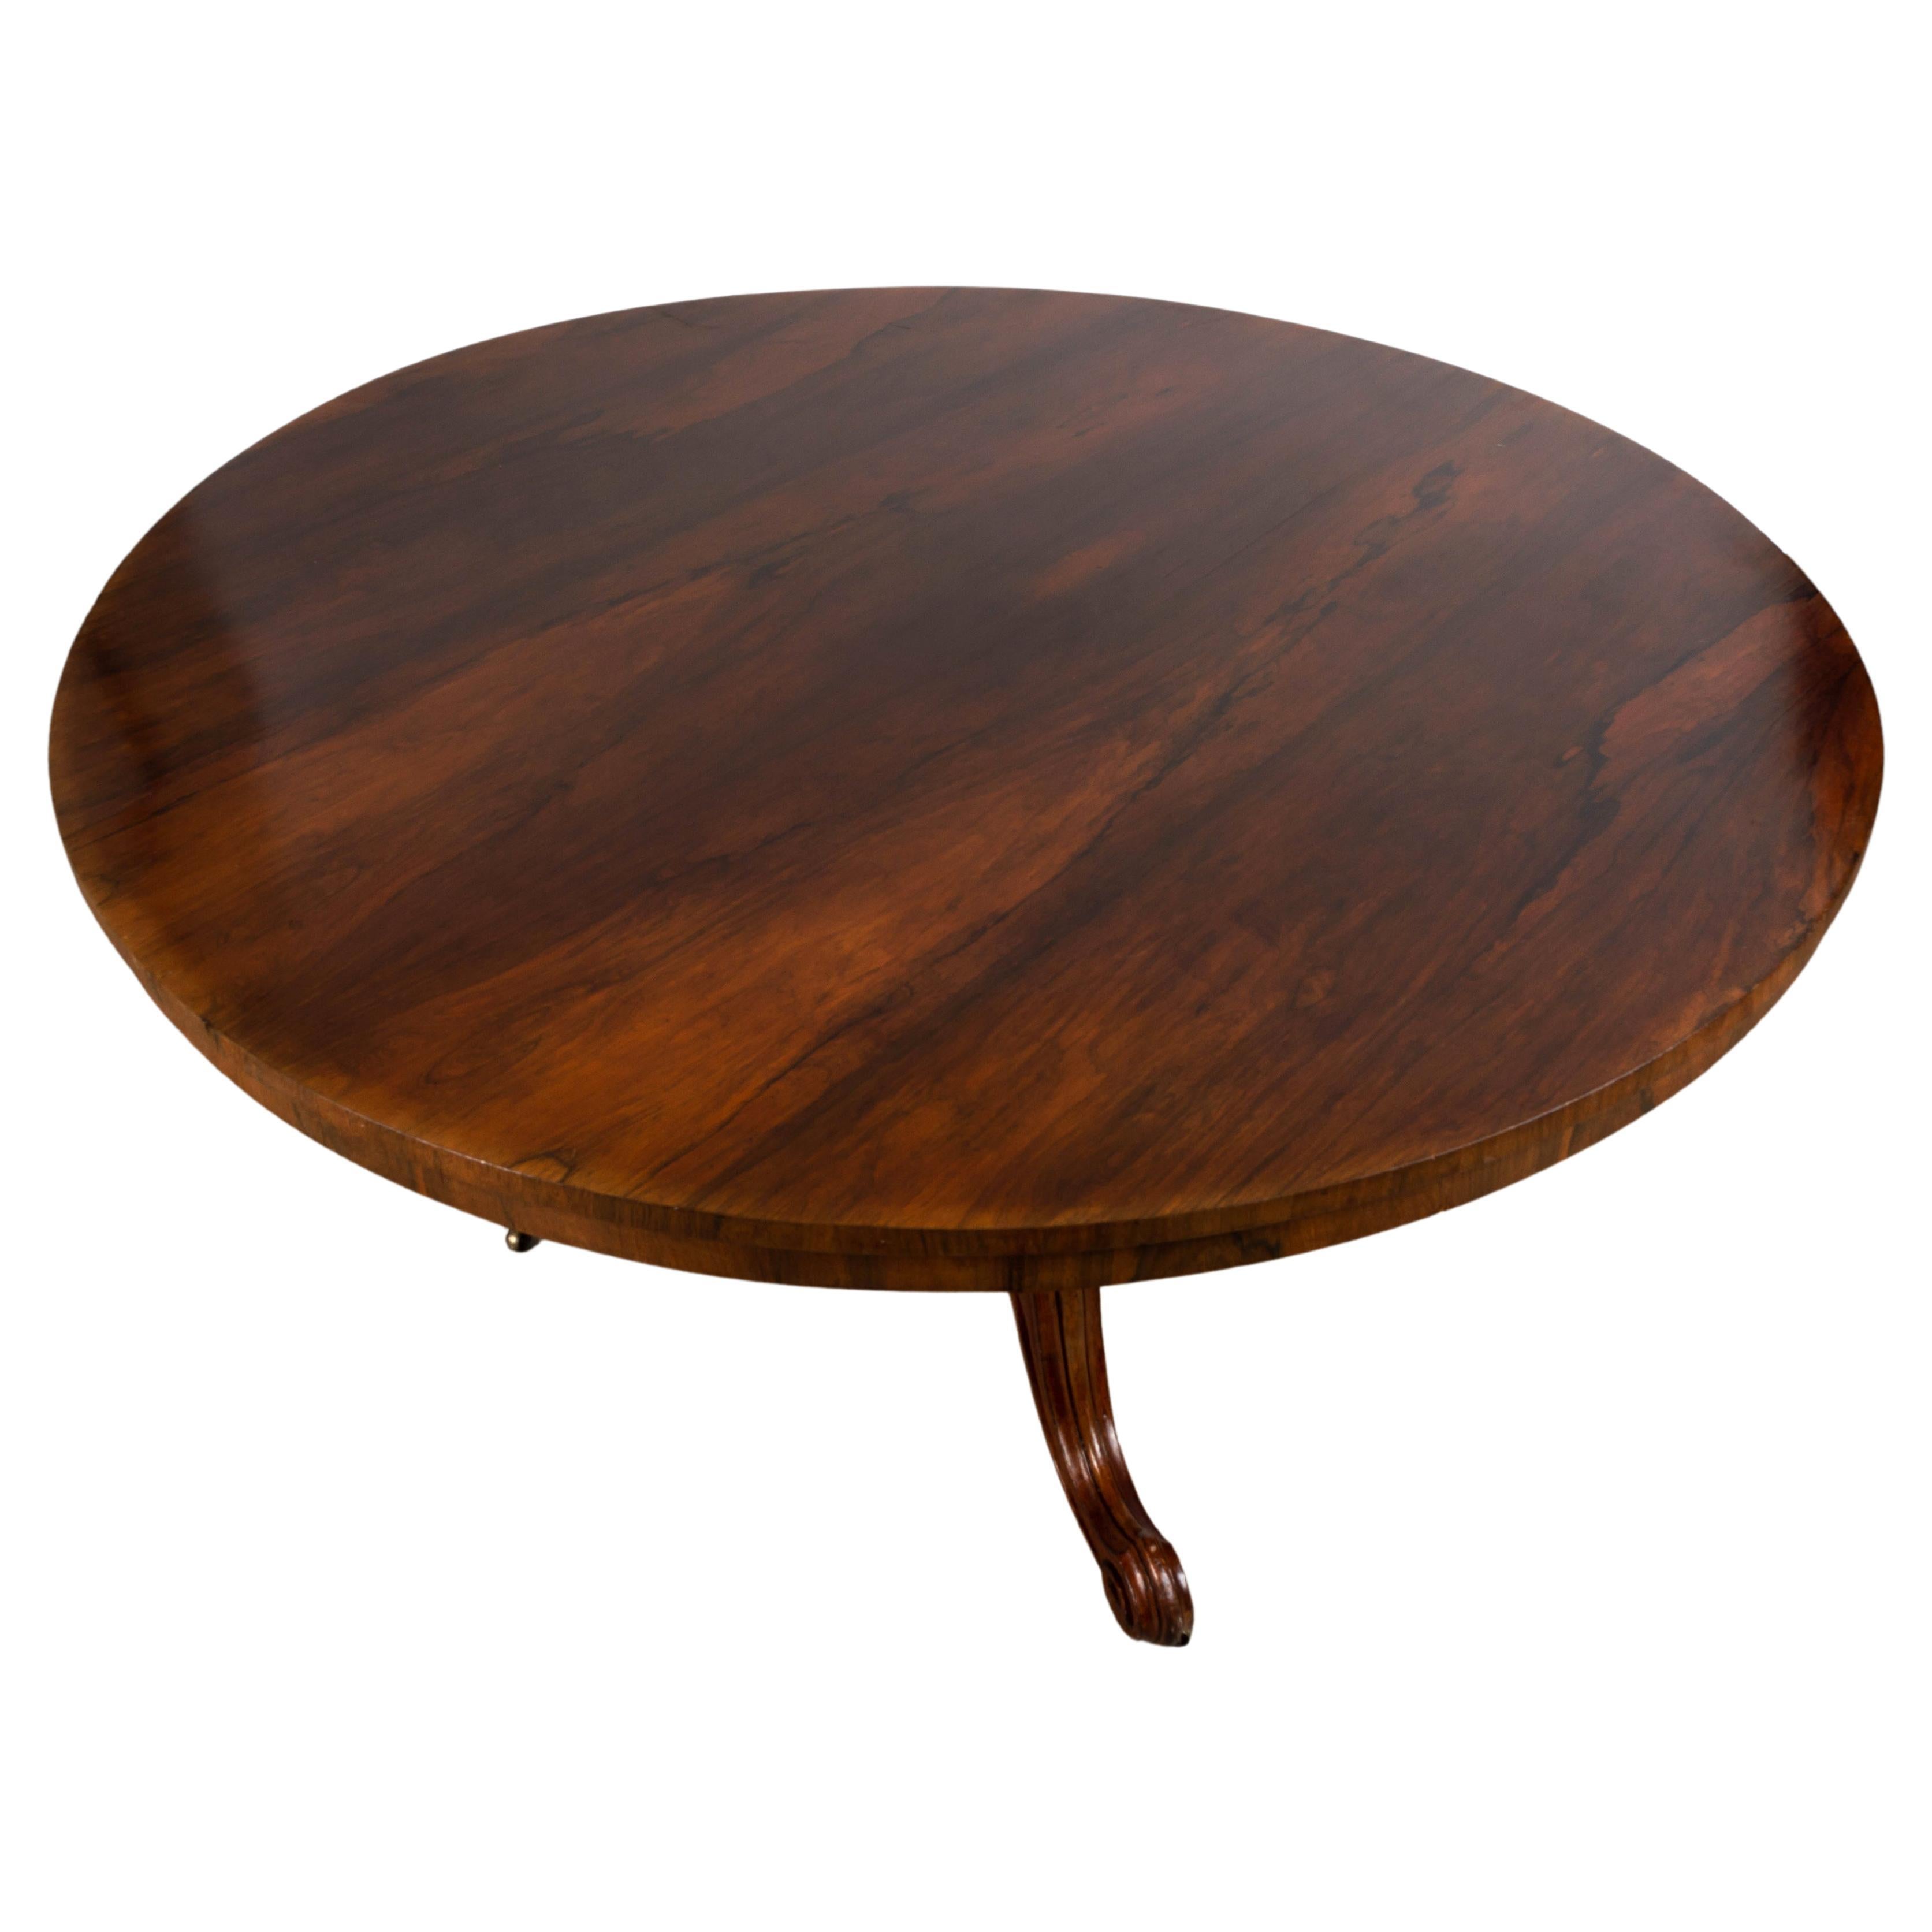 Englischer kippbarer Palisander-Mitteltisch aus dem 19. Jahrhundert (Regency), um 1830

Ein auffälliger Regency-Tisch mit kippbarer Platte aus Palisanderholz, der als Esstisch dient. 
Auf einem bauchigen Sockel und gespreizten Cabriole-Beinen,